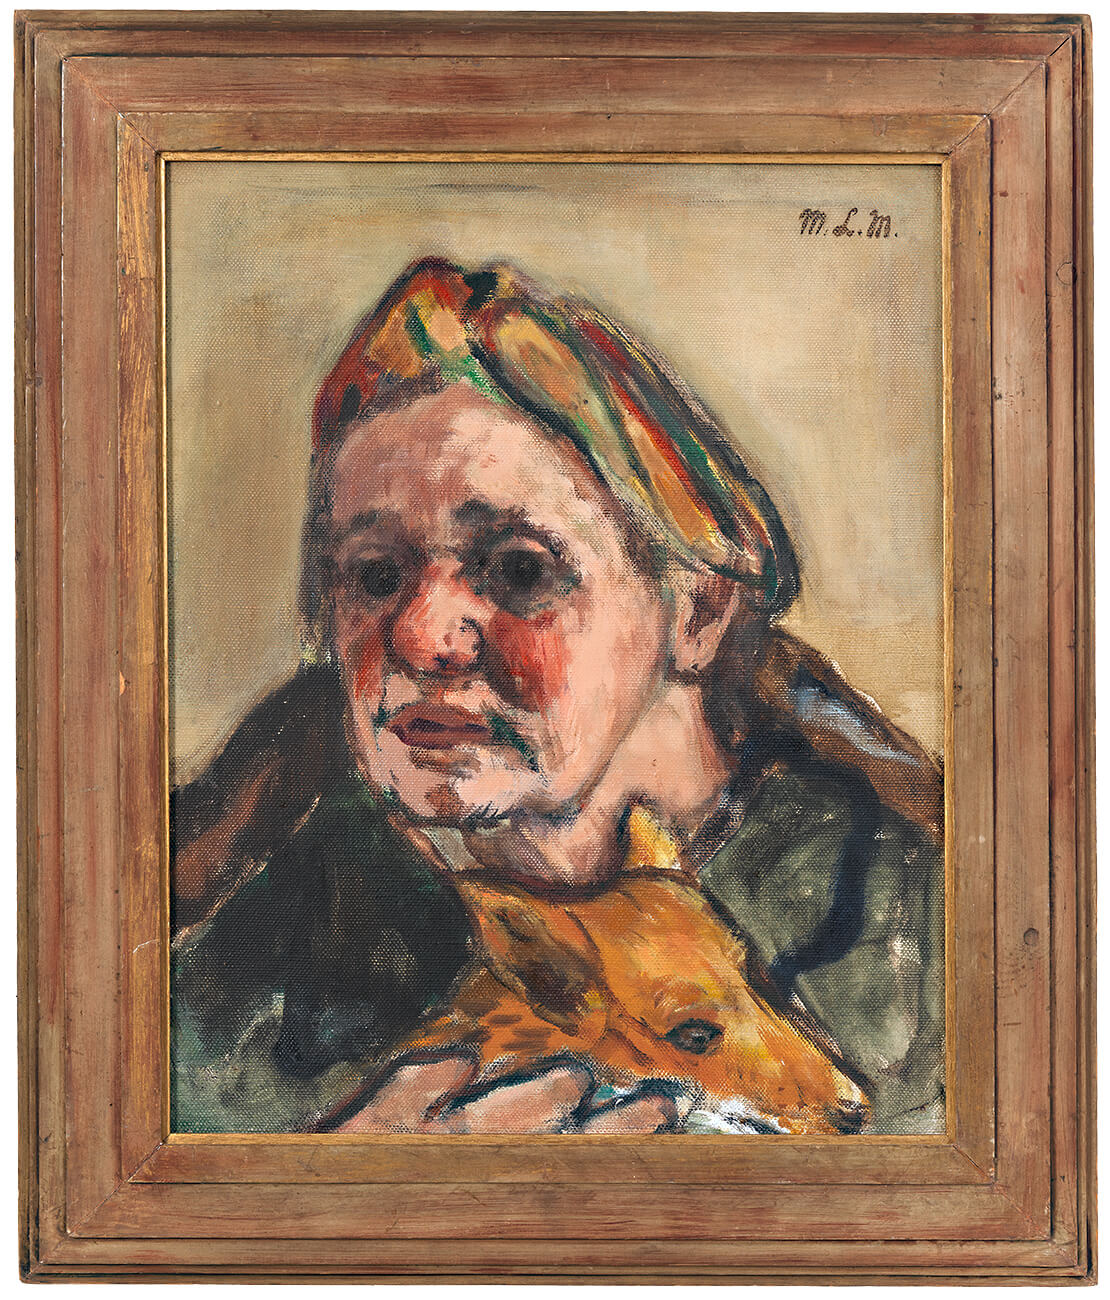 Marie-Louise von Motesiczky: Porträt mit Turban, 1952, Sammlung Wien Museum, erworben 2019 als Schenkung vom Marie-Louise von Motesiczky Charitable Trust 